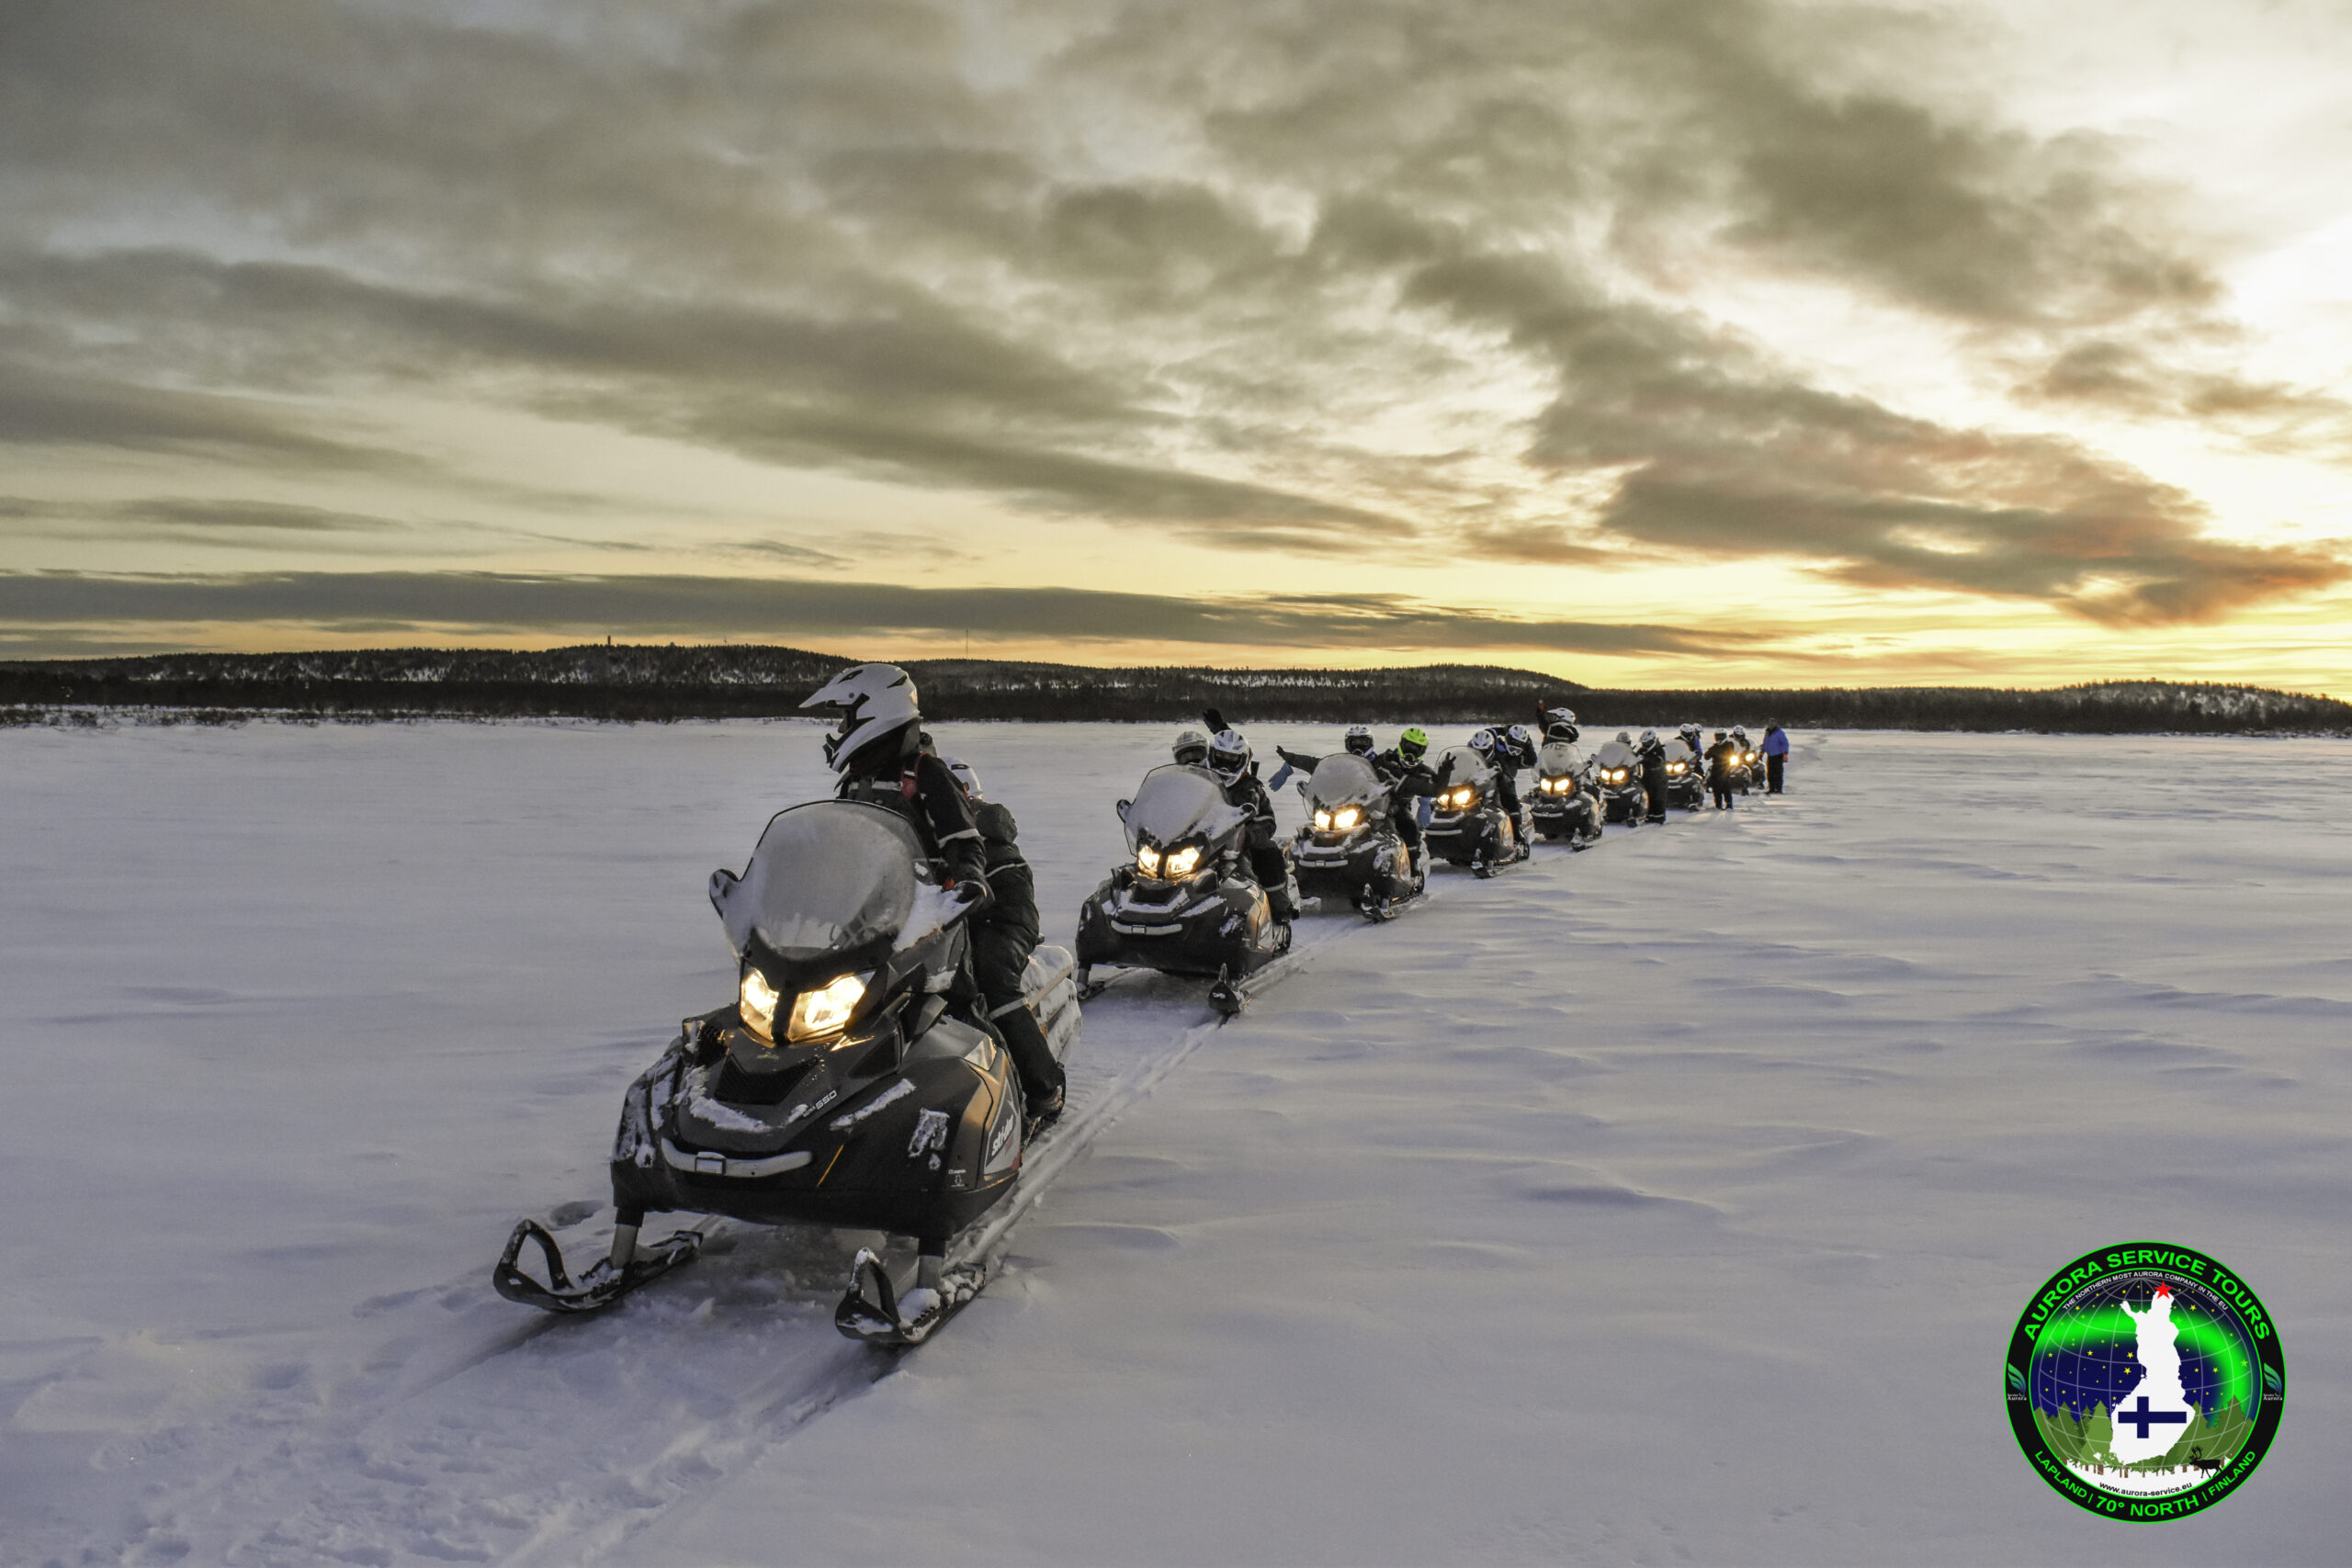 Snowmobile safari in Lapland, Finland